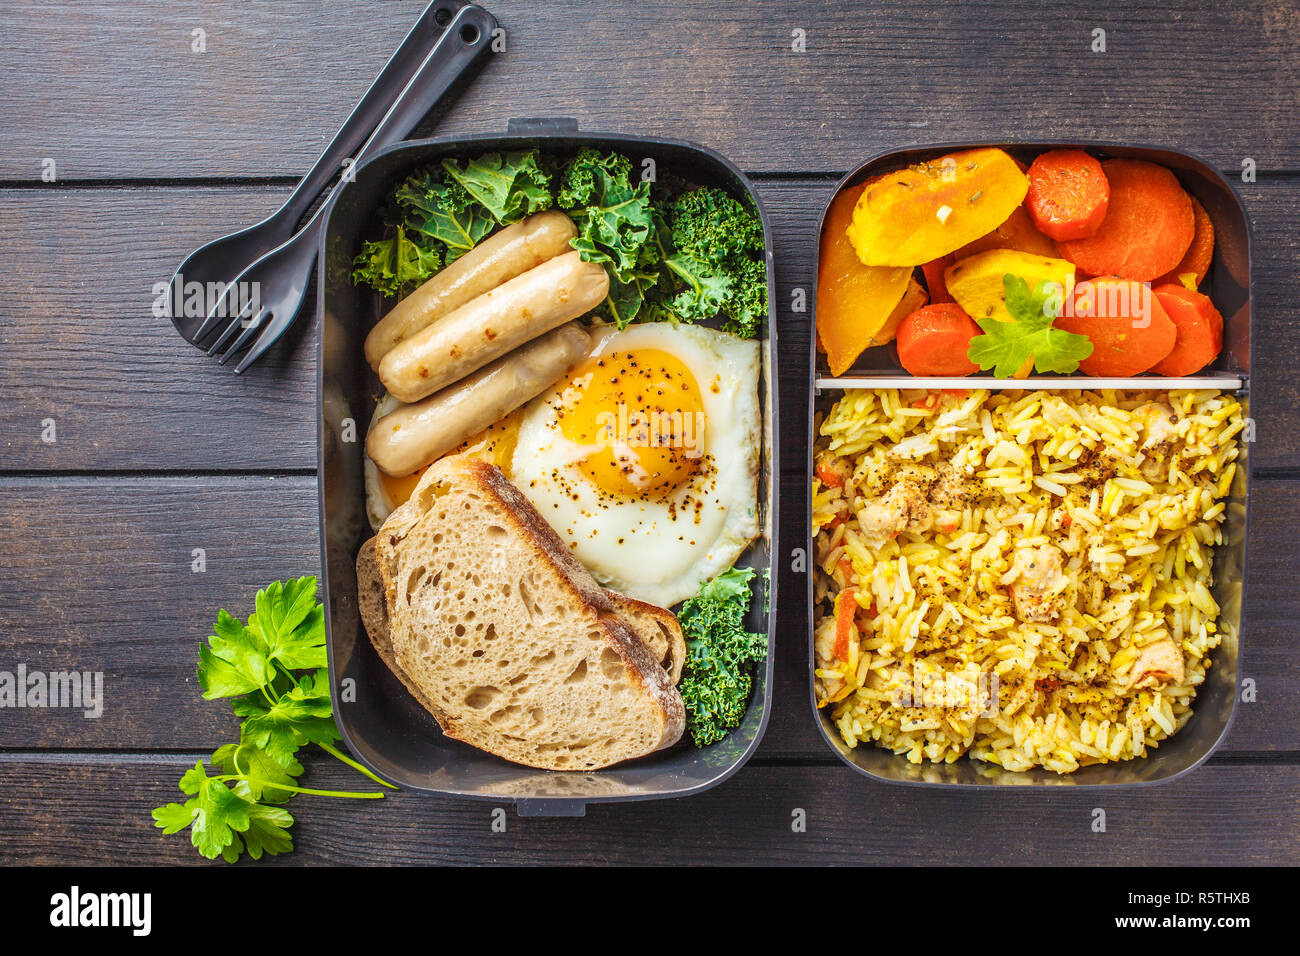 Conteneurs préparation des repas avec du riz avec du poulet, des légumes, des œufs, des saucisses et de la salade pour le petit-déjeuner et le déjeuner tiré des frais généraux. Banque D'Images